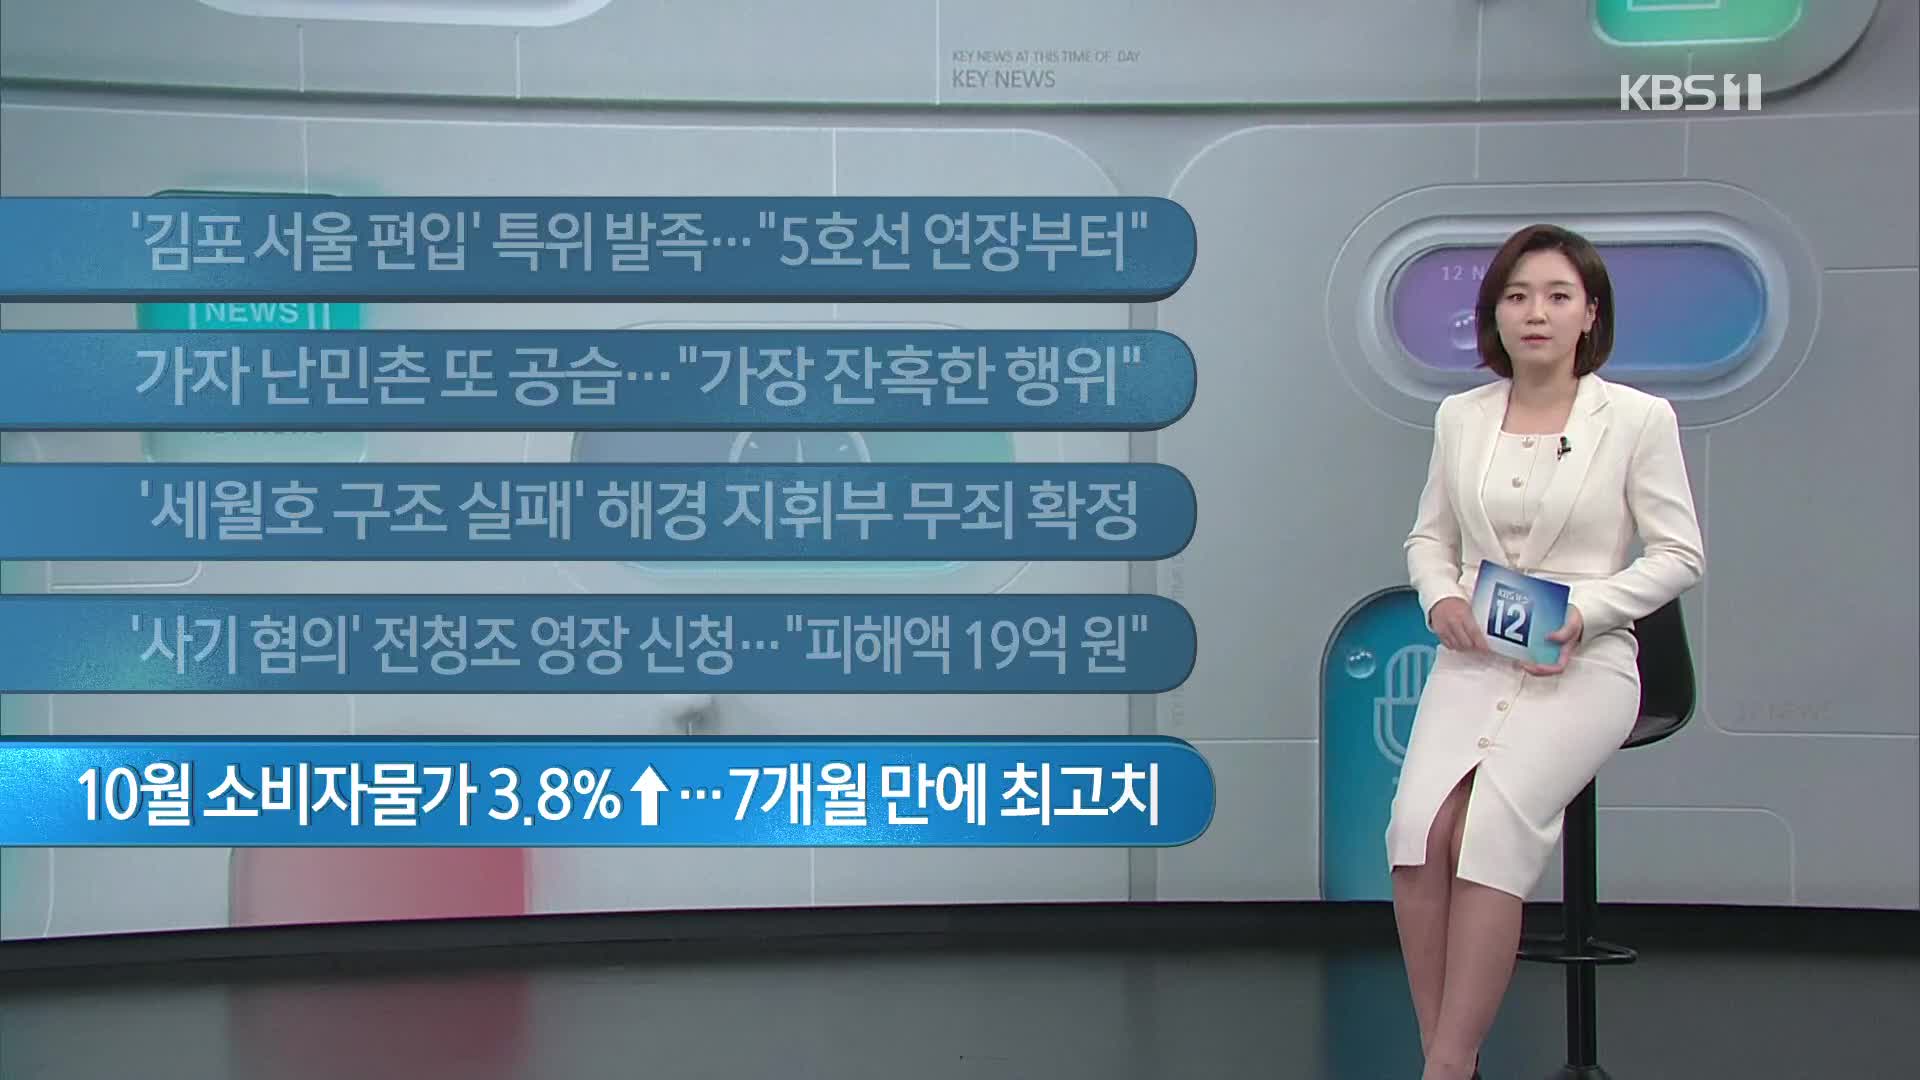 [이 시각 주요뉴스] ‘김포 서울 편입’ 특위 발족…“5호선 연장부터” 외